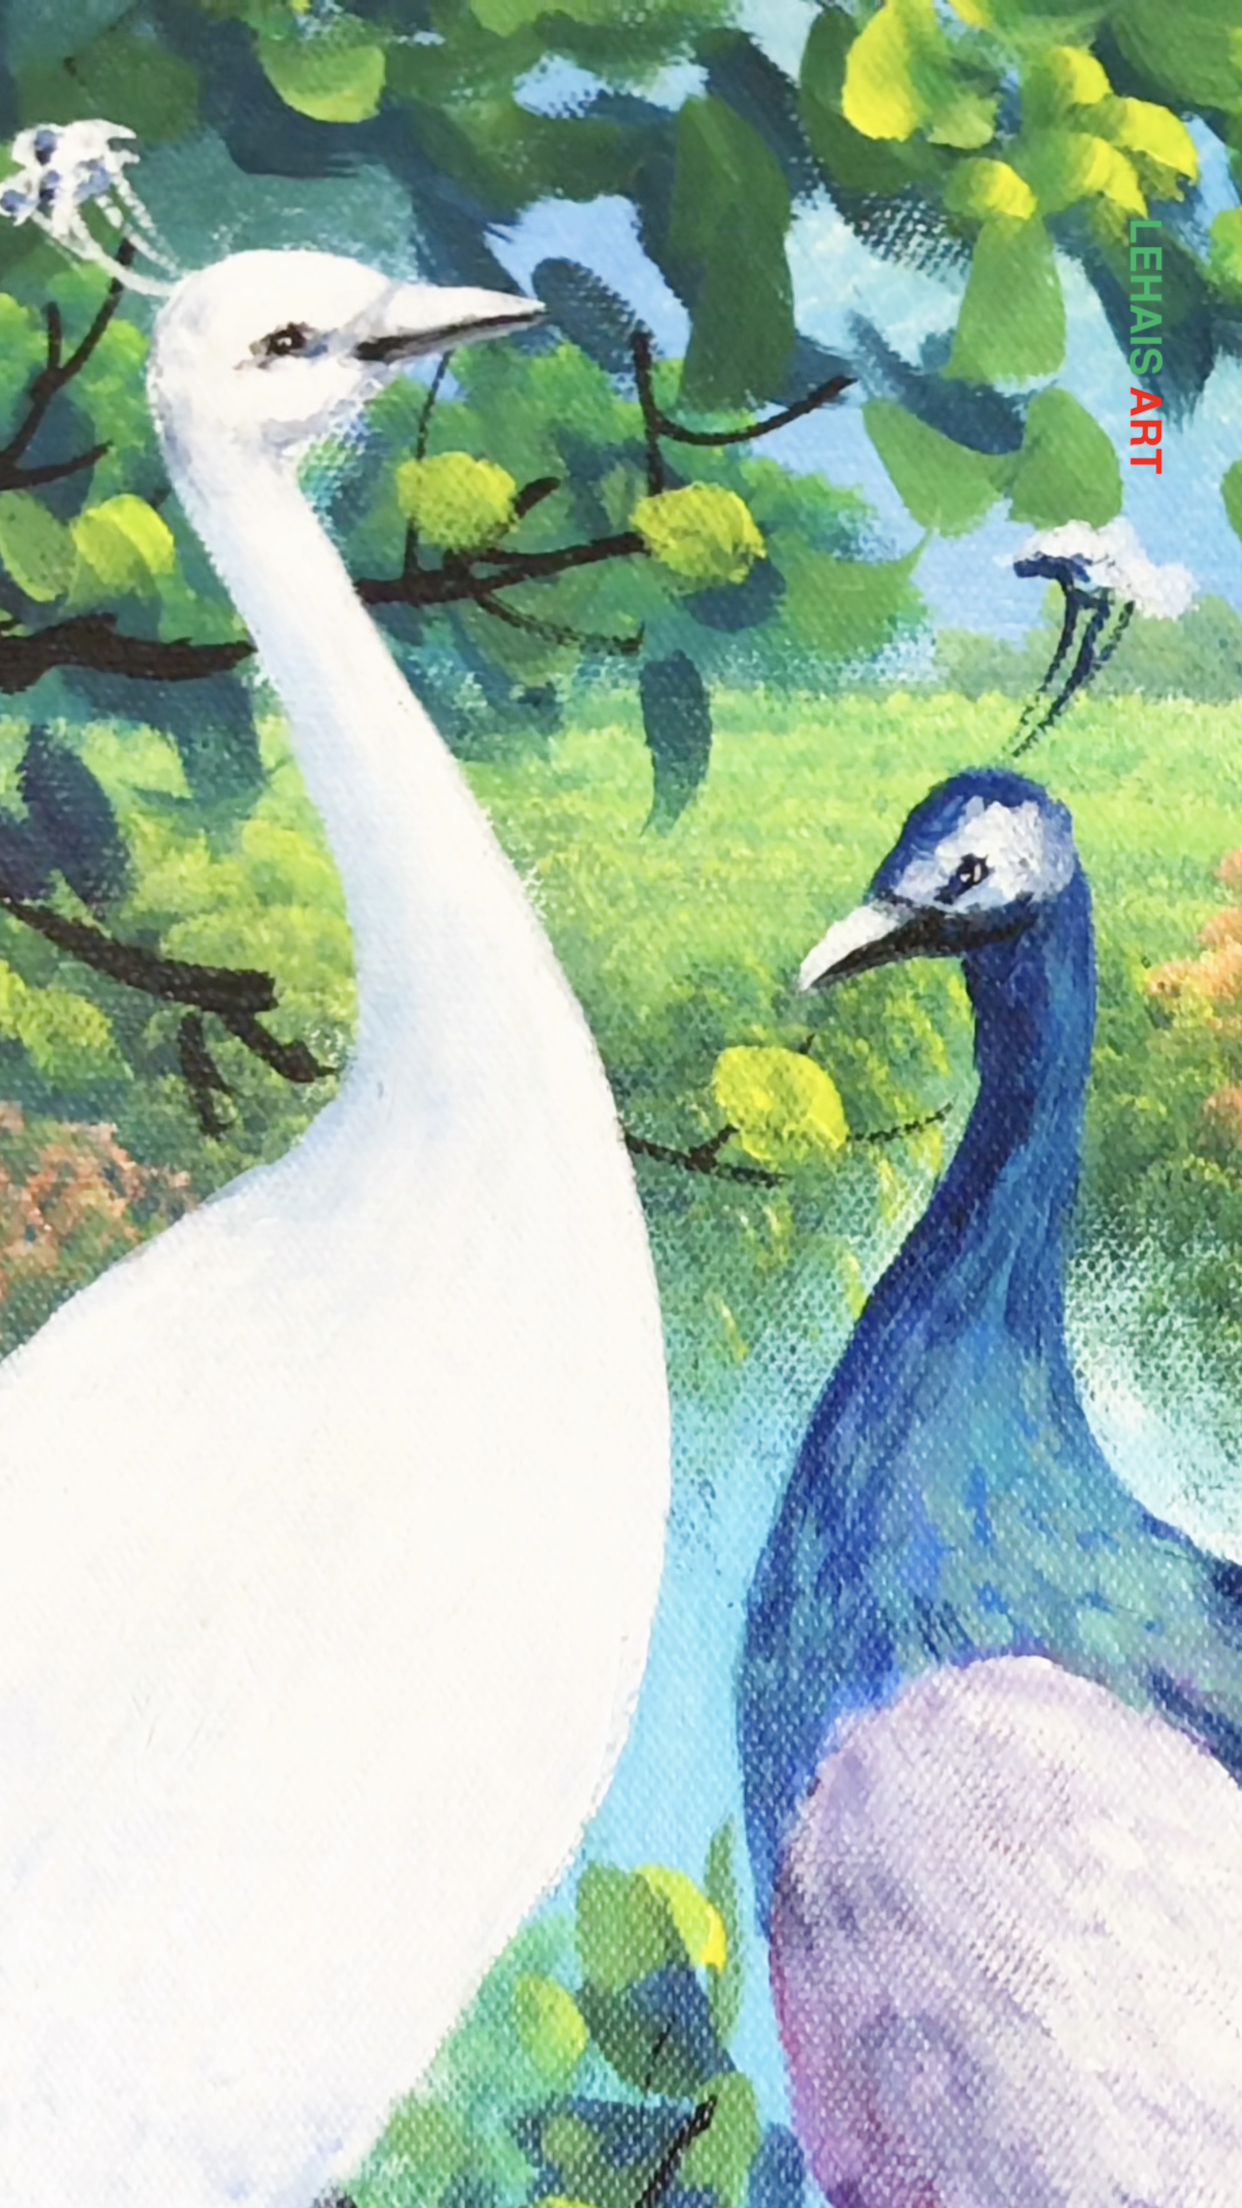 Tranh sơn acrylic vẽ hình ảnh chim công thể hiện cho sự cao quý